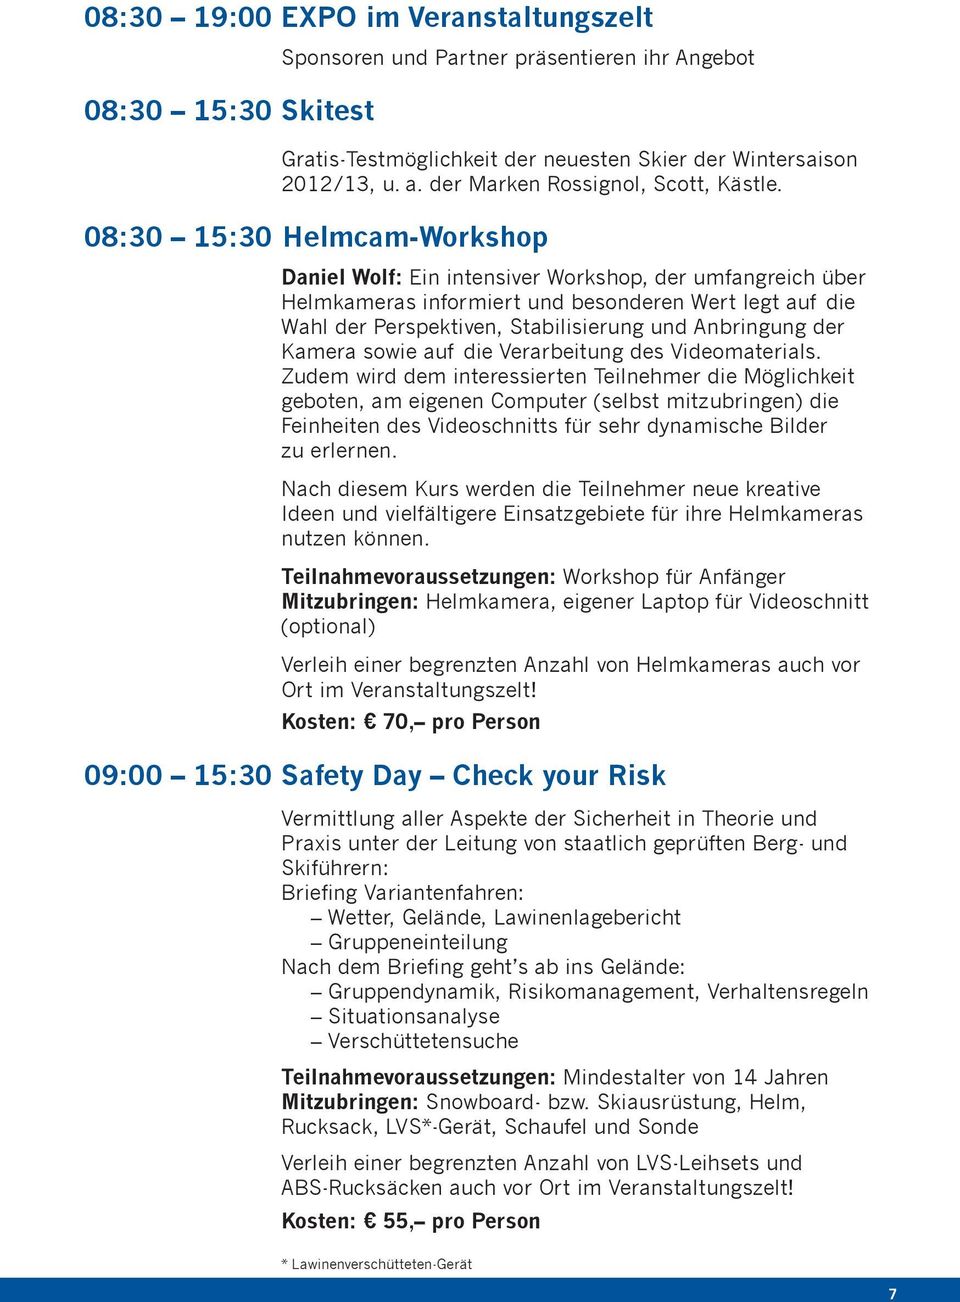 08:30 15:30 Helmcam-Workshop Daniel Wolf: Ein intensiver Workshop, der umfangreich über Helmkameras informiert und besonderen Wert legt auf die Wahl der Perspektiven, Stabilisierung und Anbringung